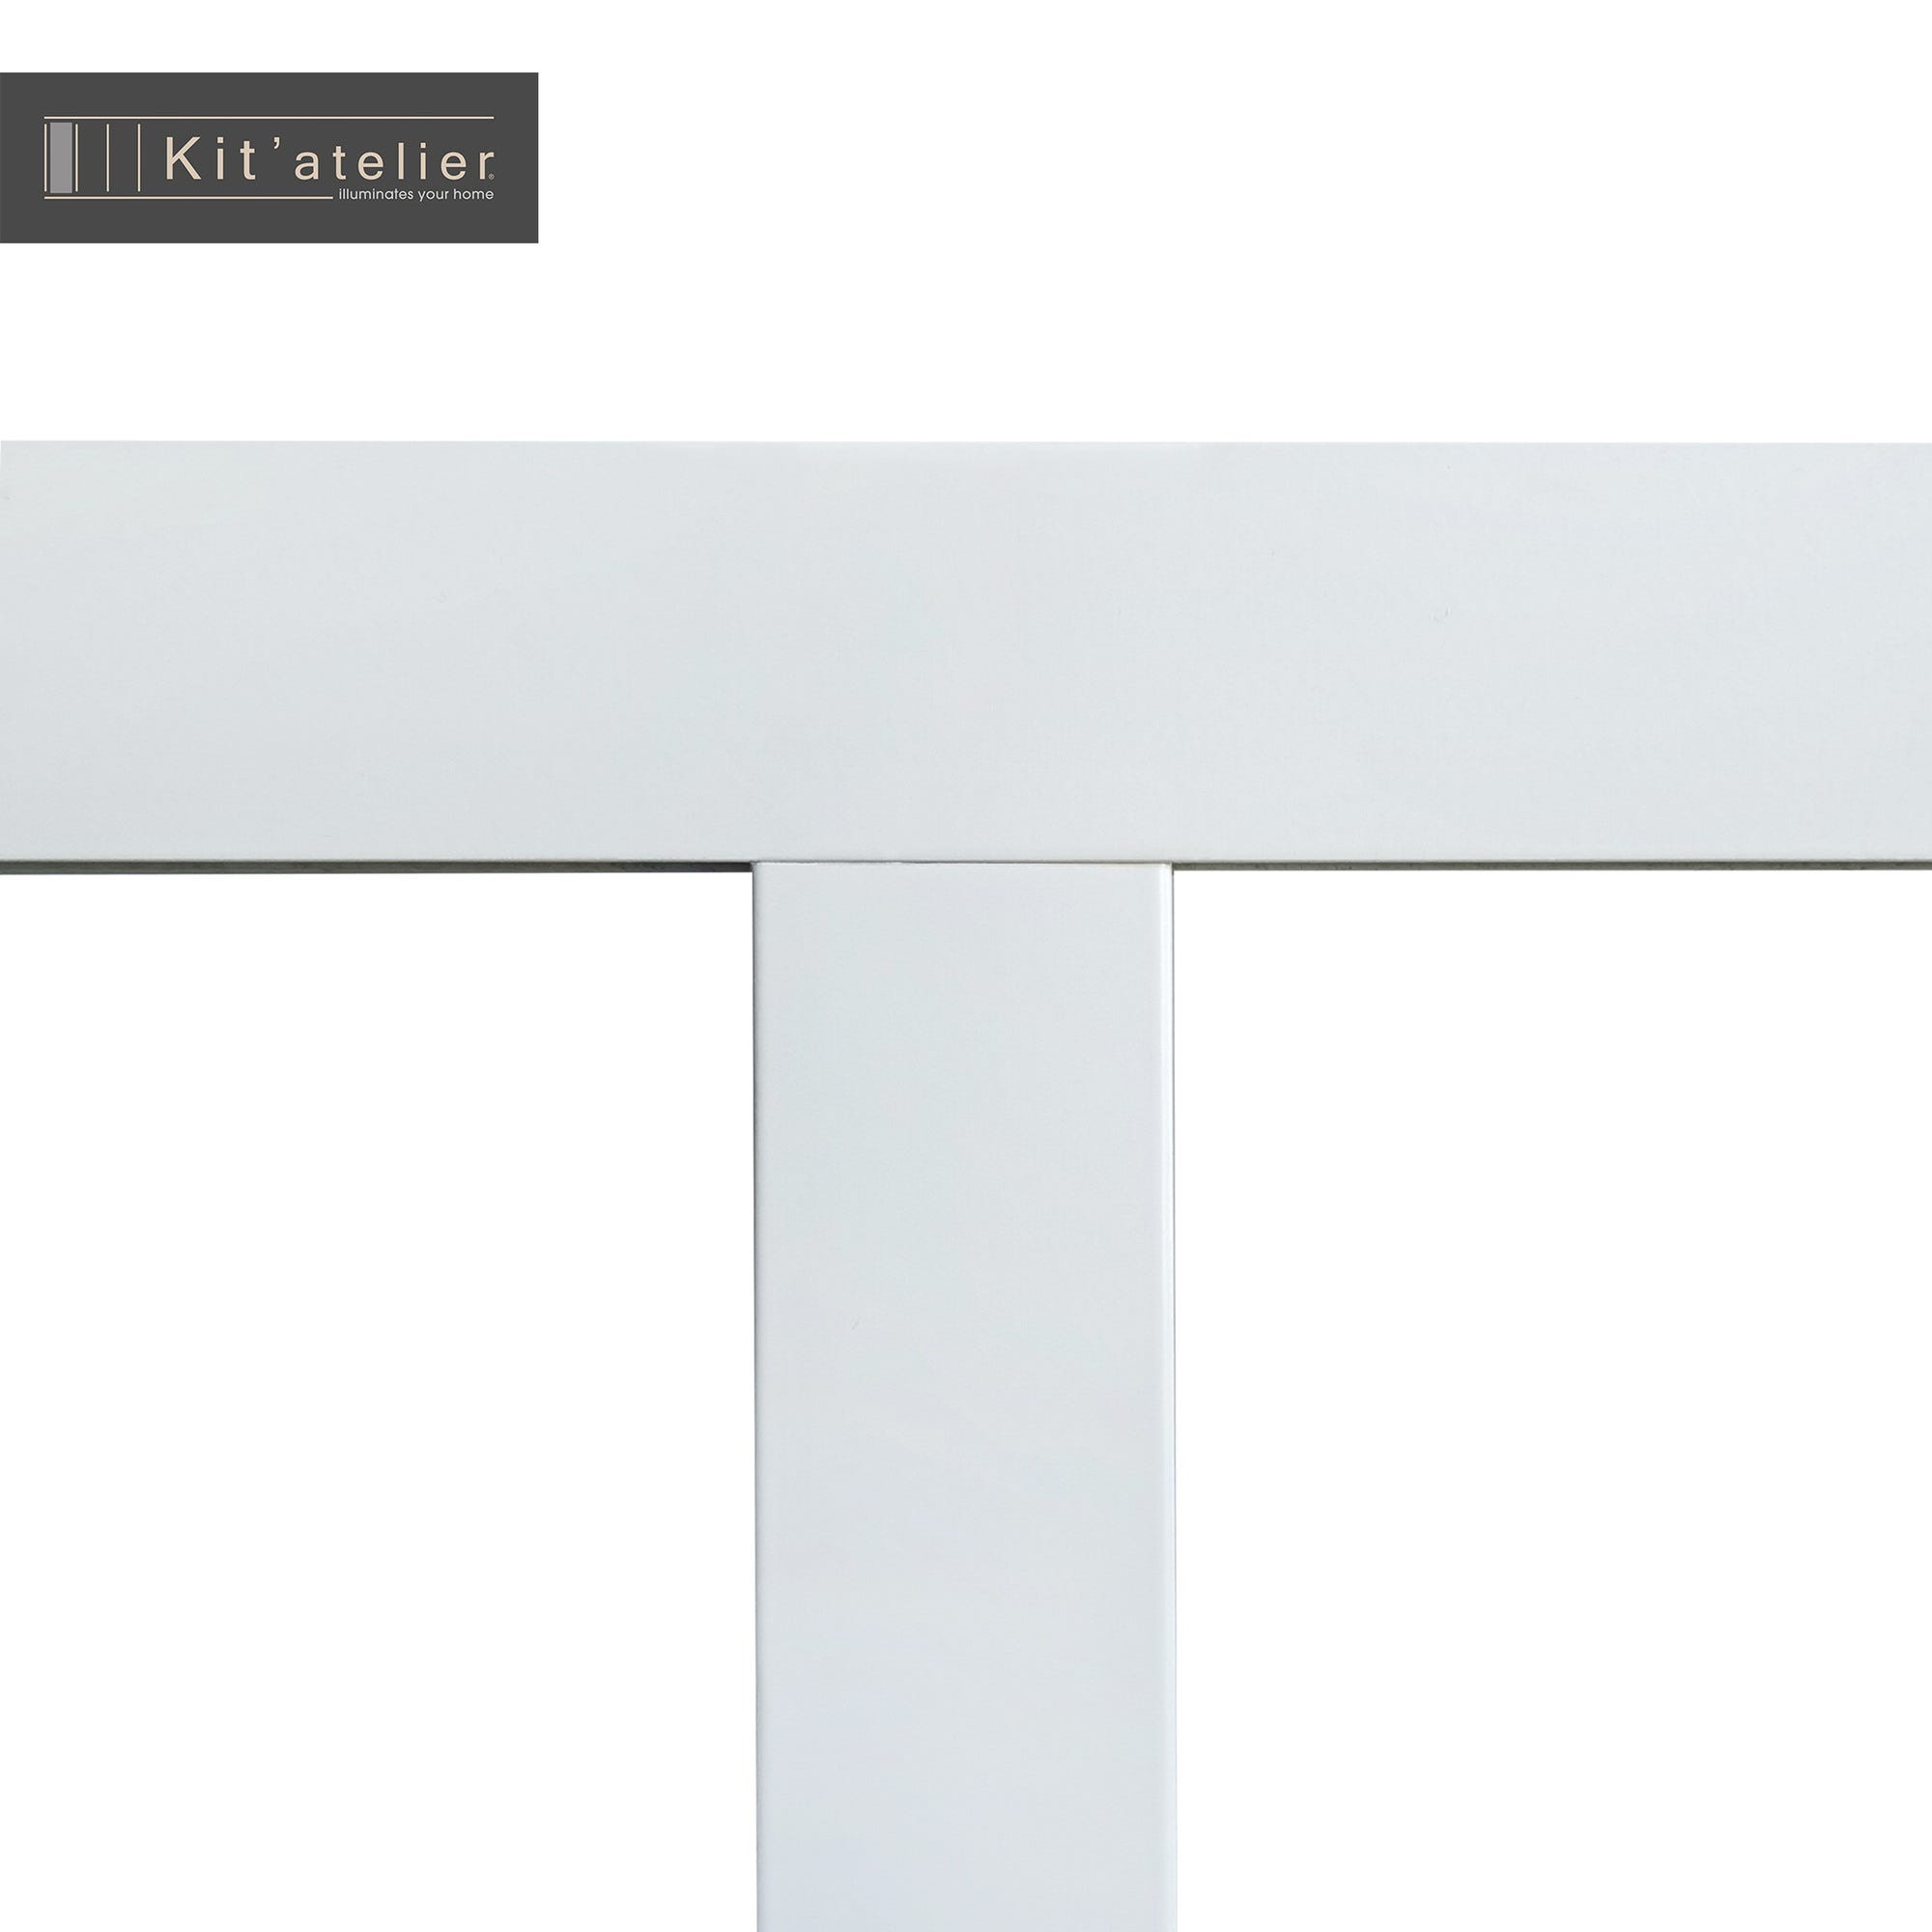 Kit verrière aluminium 4 vitrages clairs inclus hauteur 1080 mm blanc sablé 1